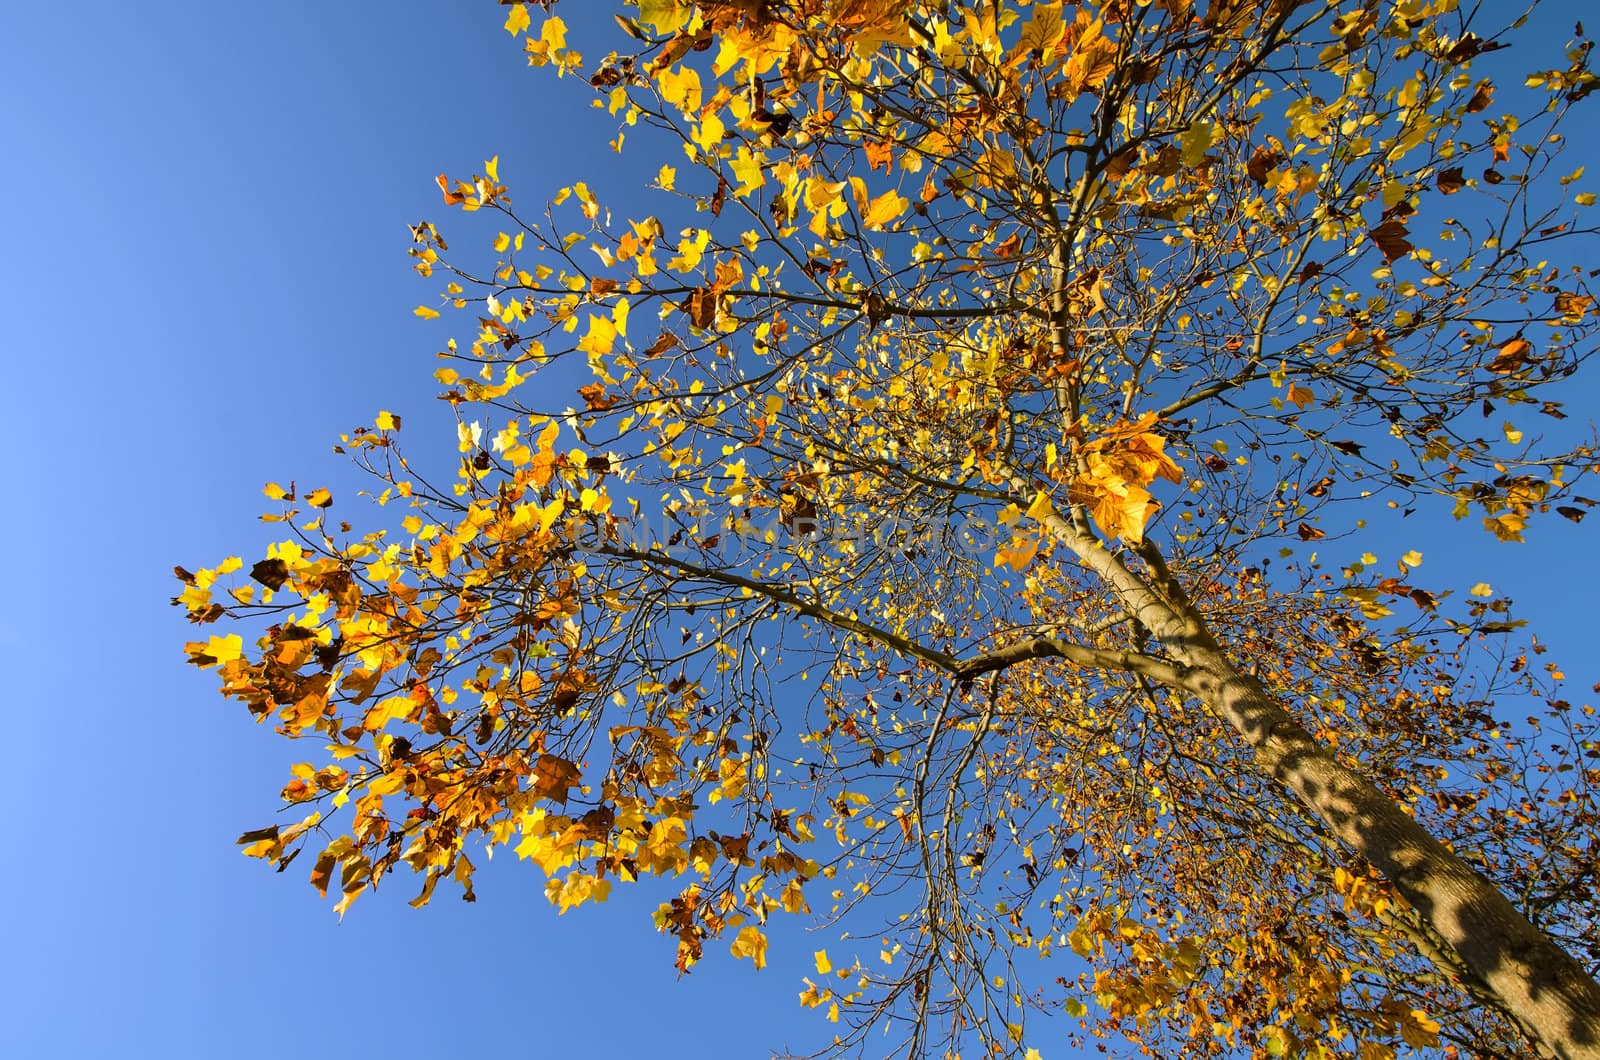 the Autumn tree